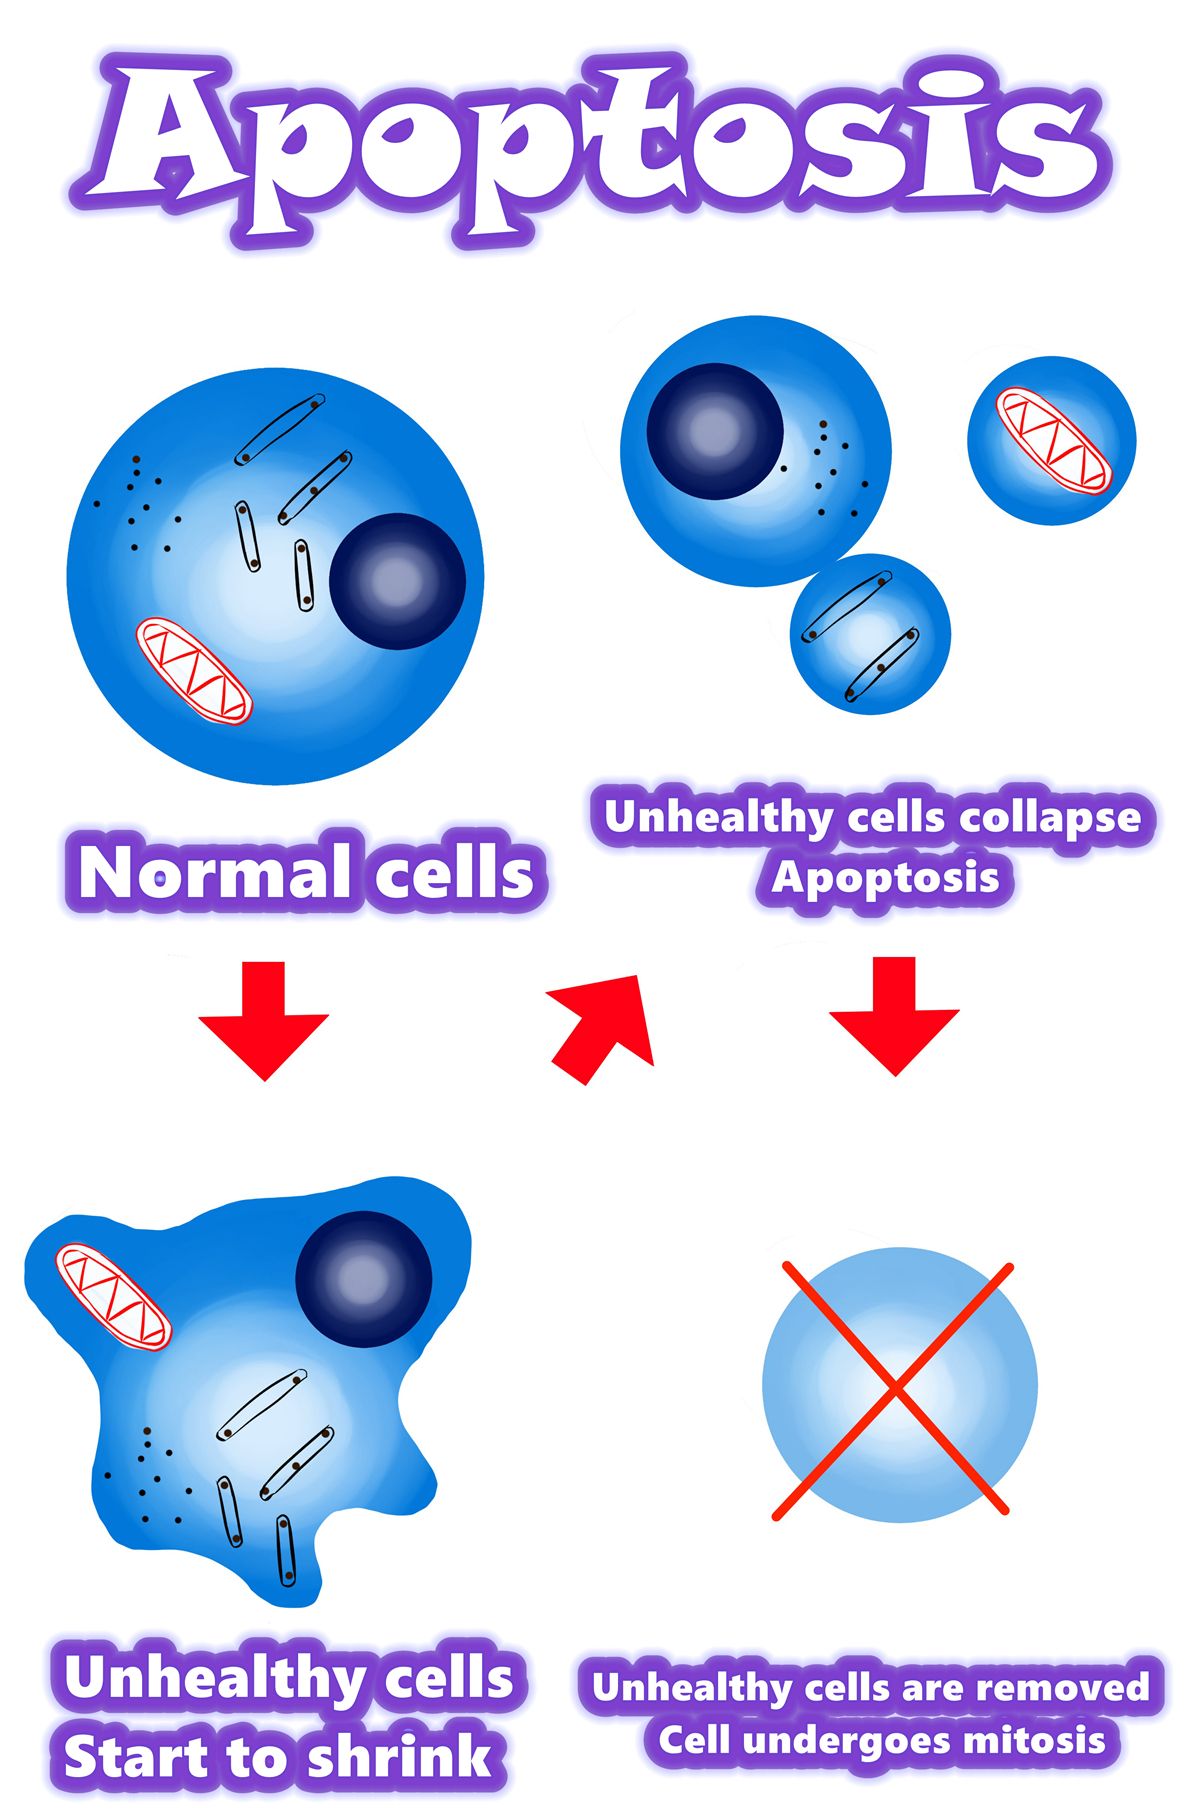 Solamargine | Найкраще рішення для ракових клітин у 2021 році | Апоптоз проти ракових клітин | Апоптоз проти аномальних клітин | Апоптоз проти мутантних клітин | Огляд / Резюме / Механізм апоптозу